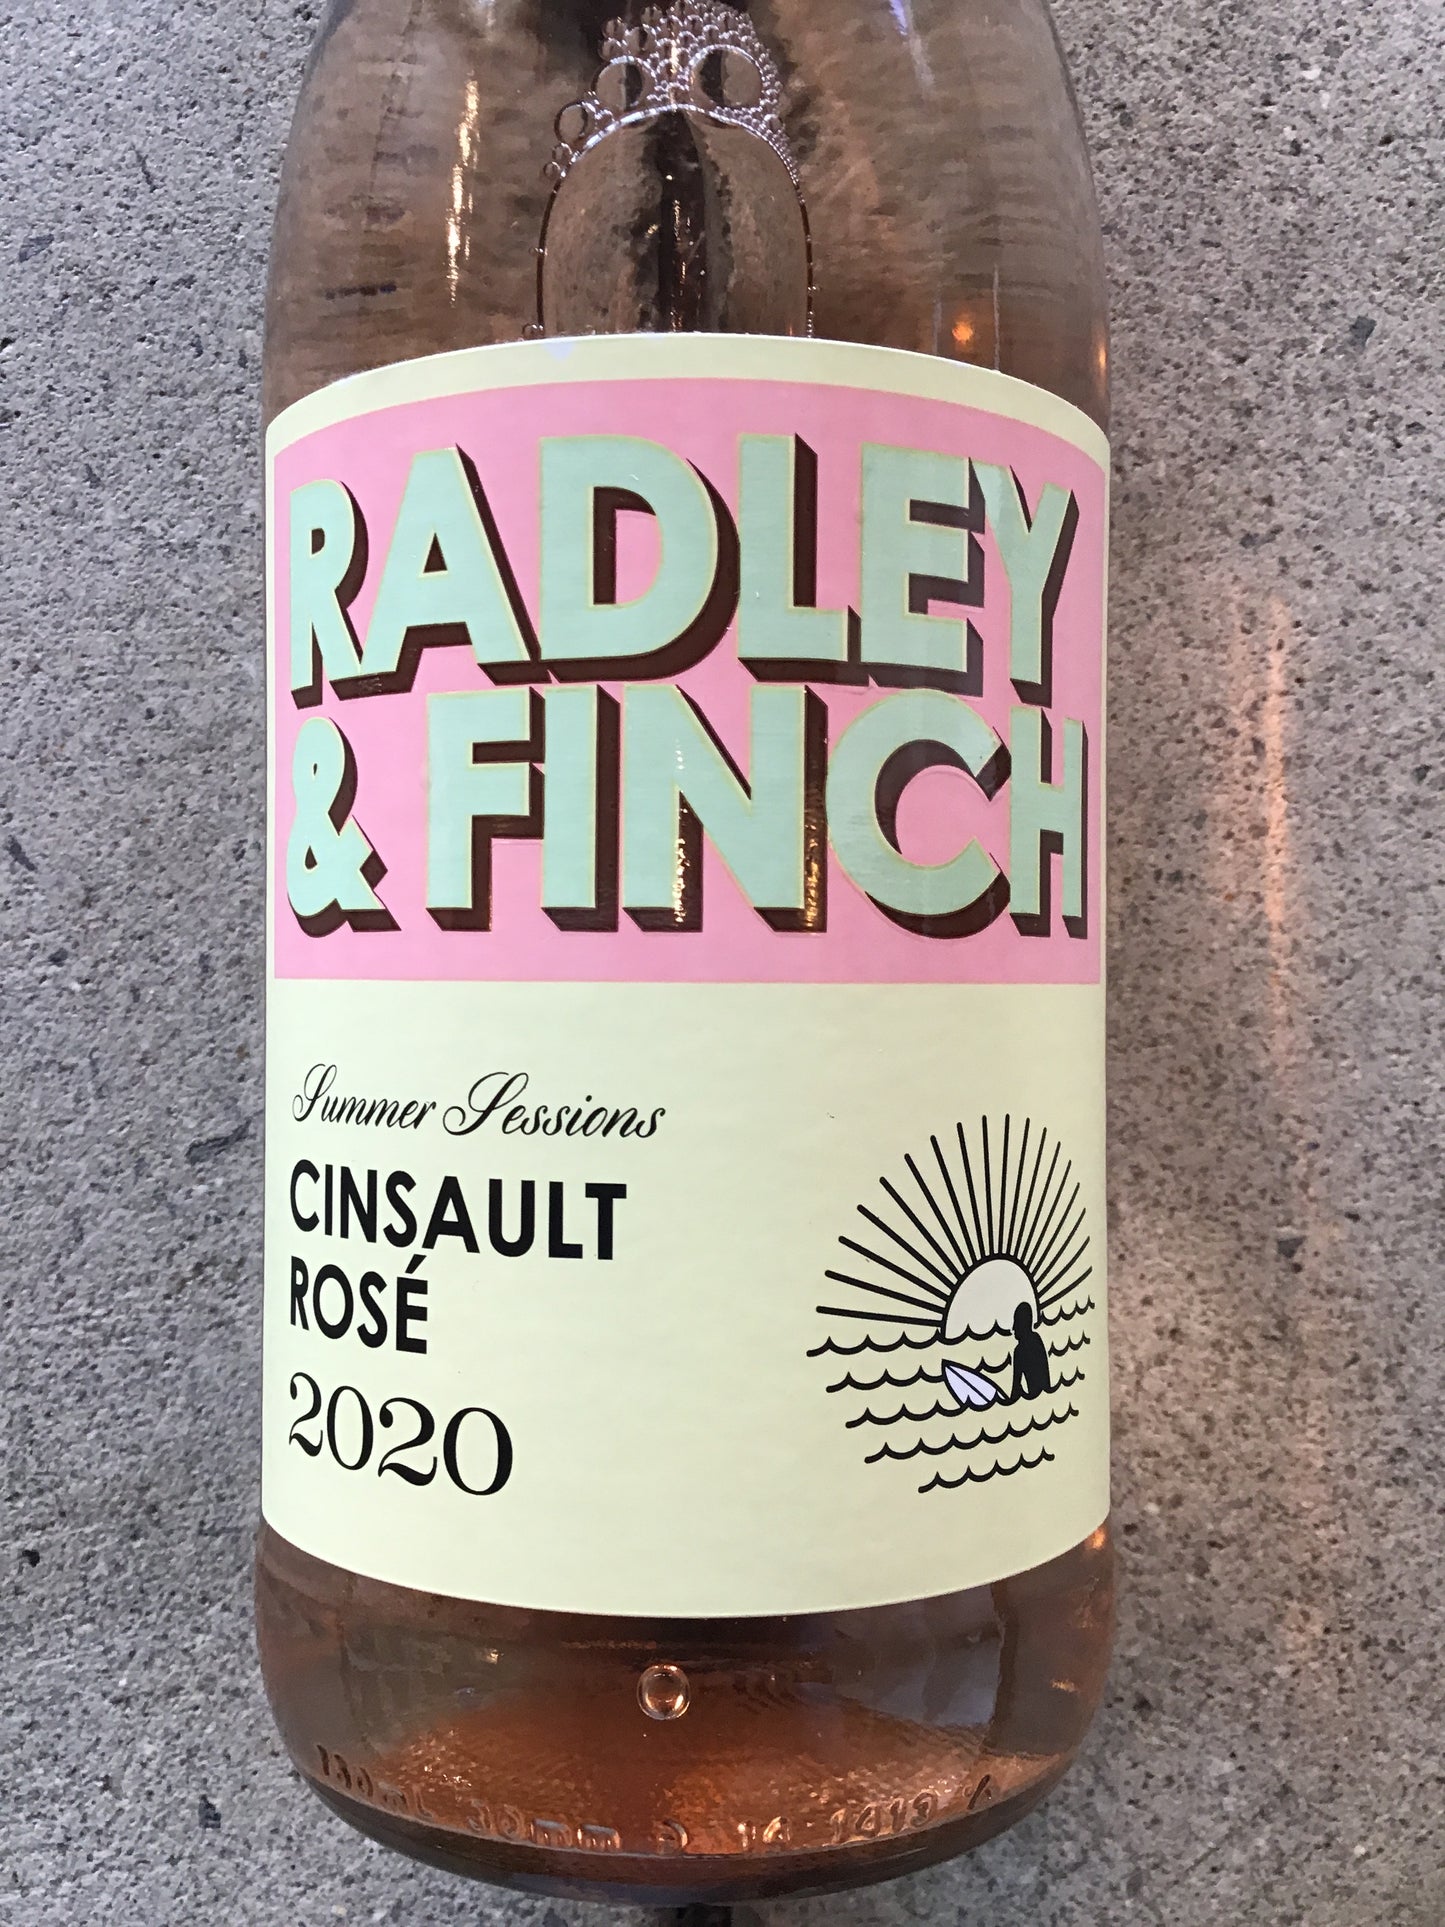 Radley & Finch - Cinsault Rose